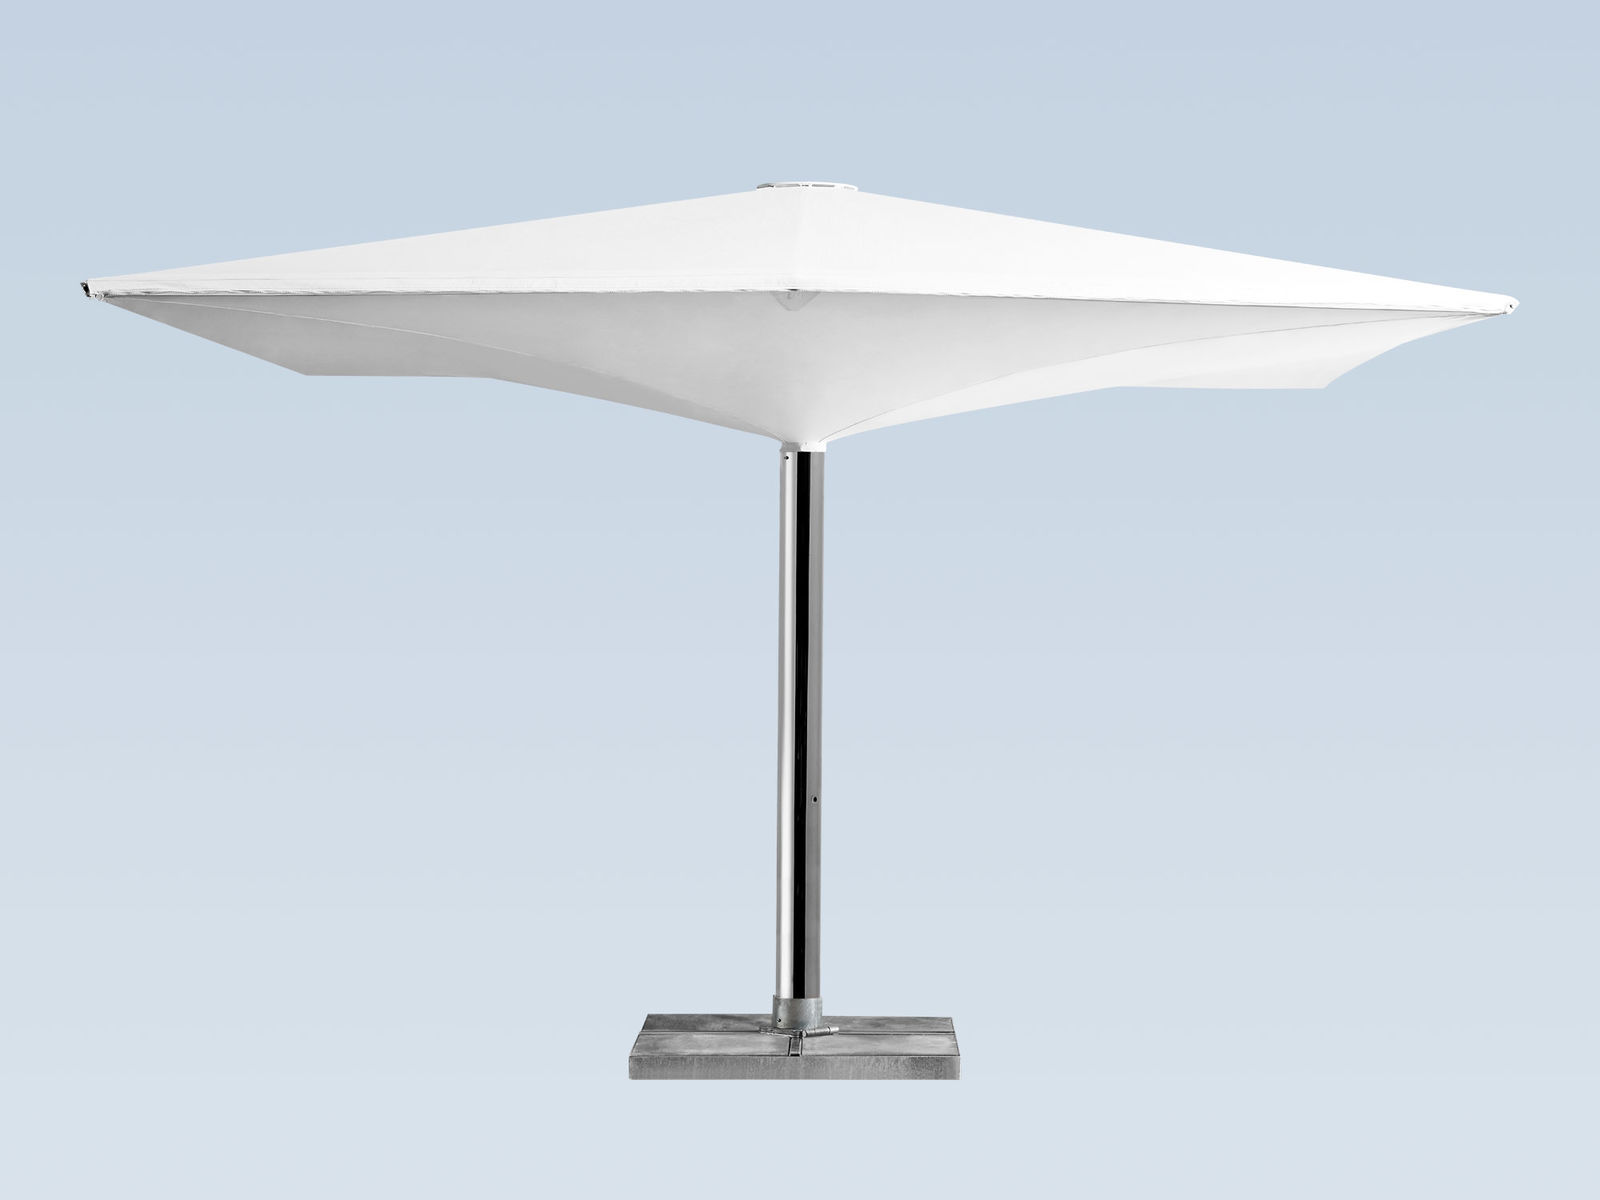 Двойной зонт с балдахином тип AV - Avenches  от Bau Hoff